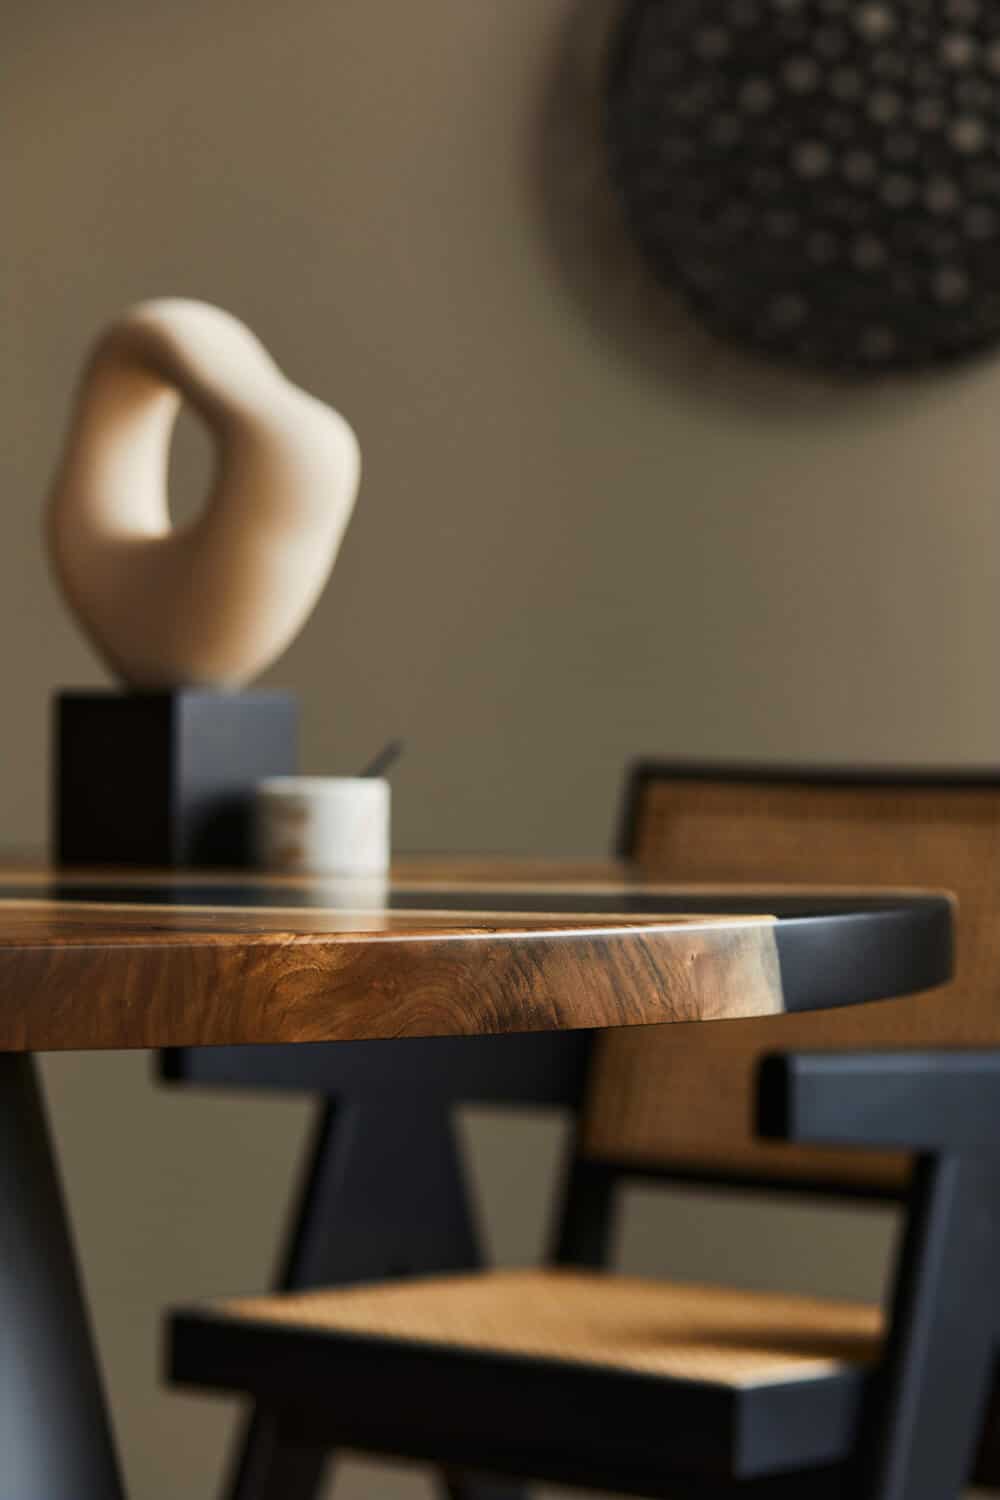 Piękno litego drewna, czyli nowoczesne stoły